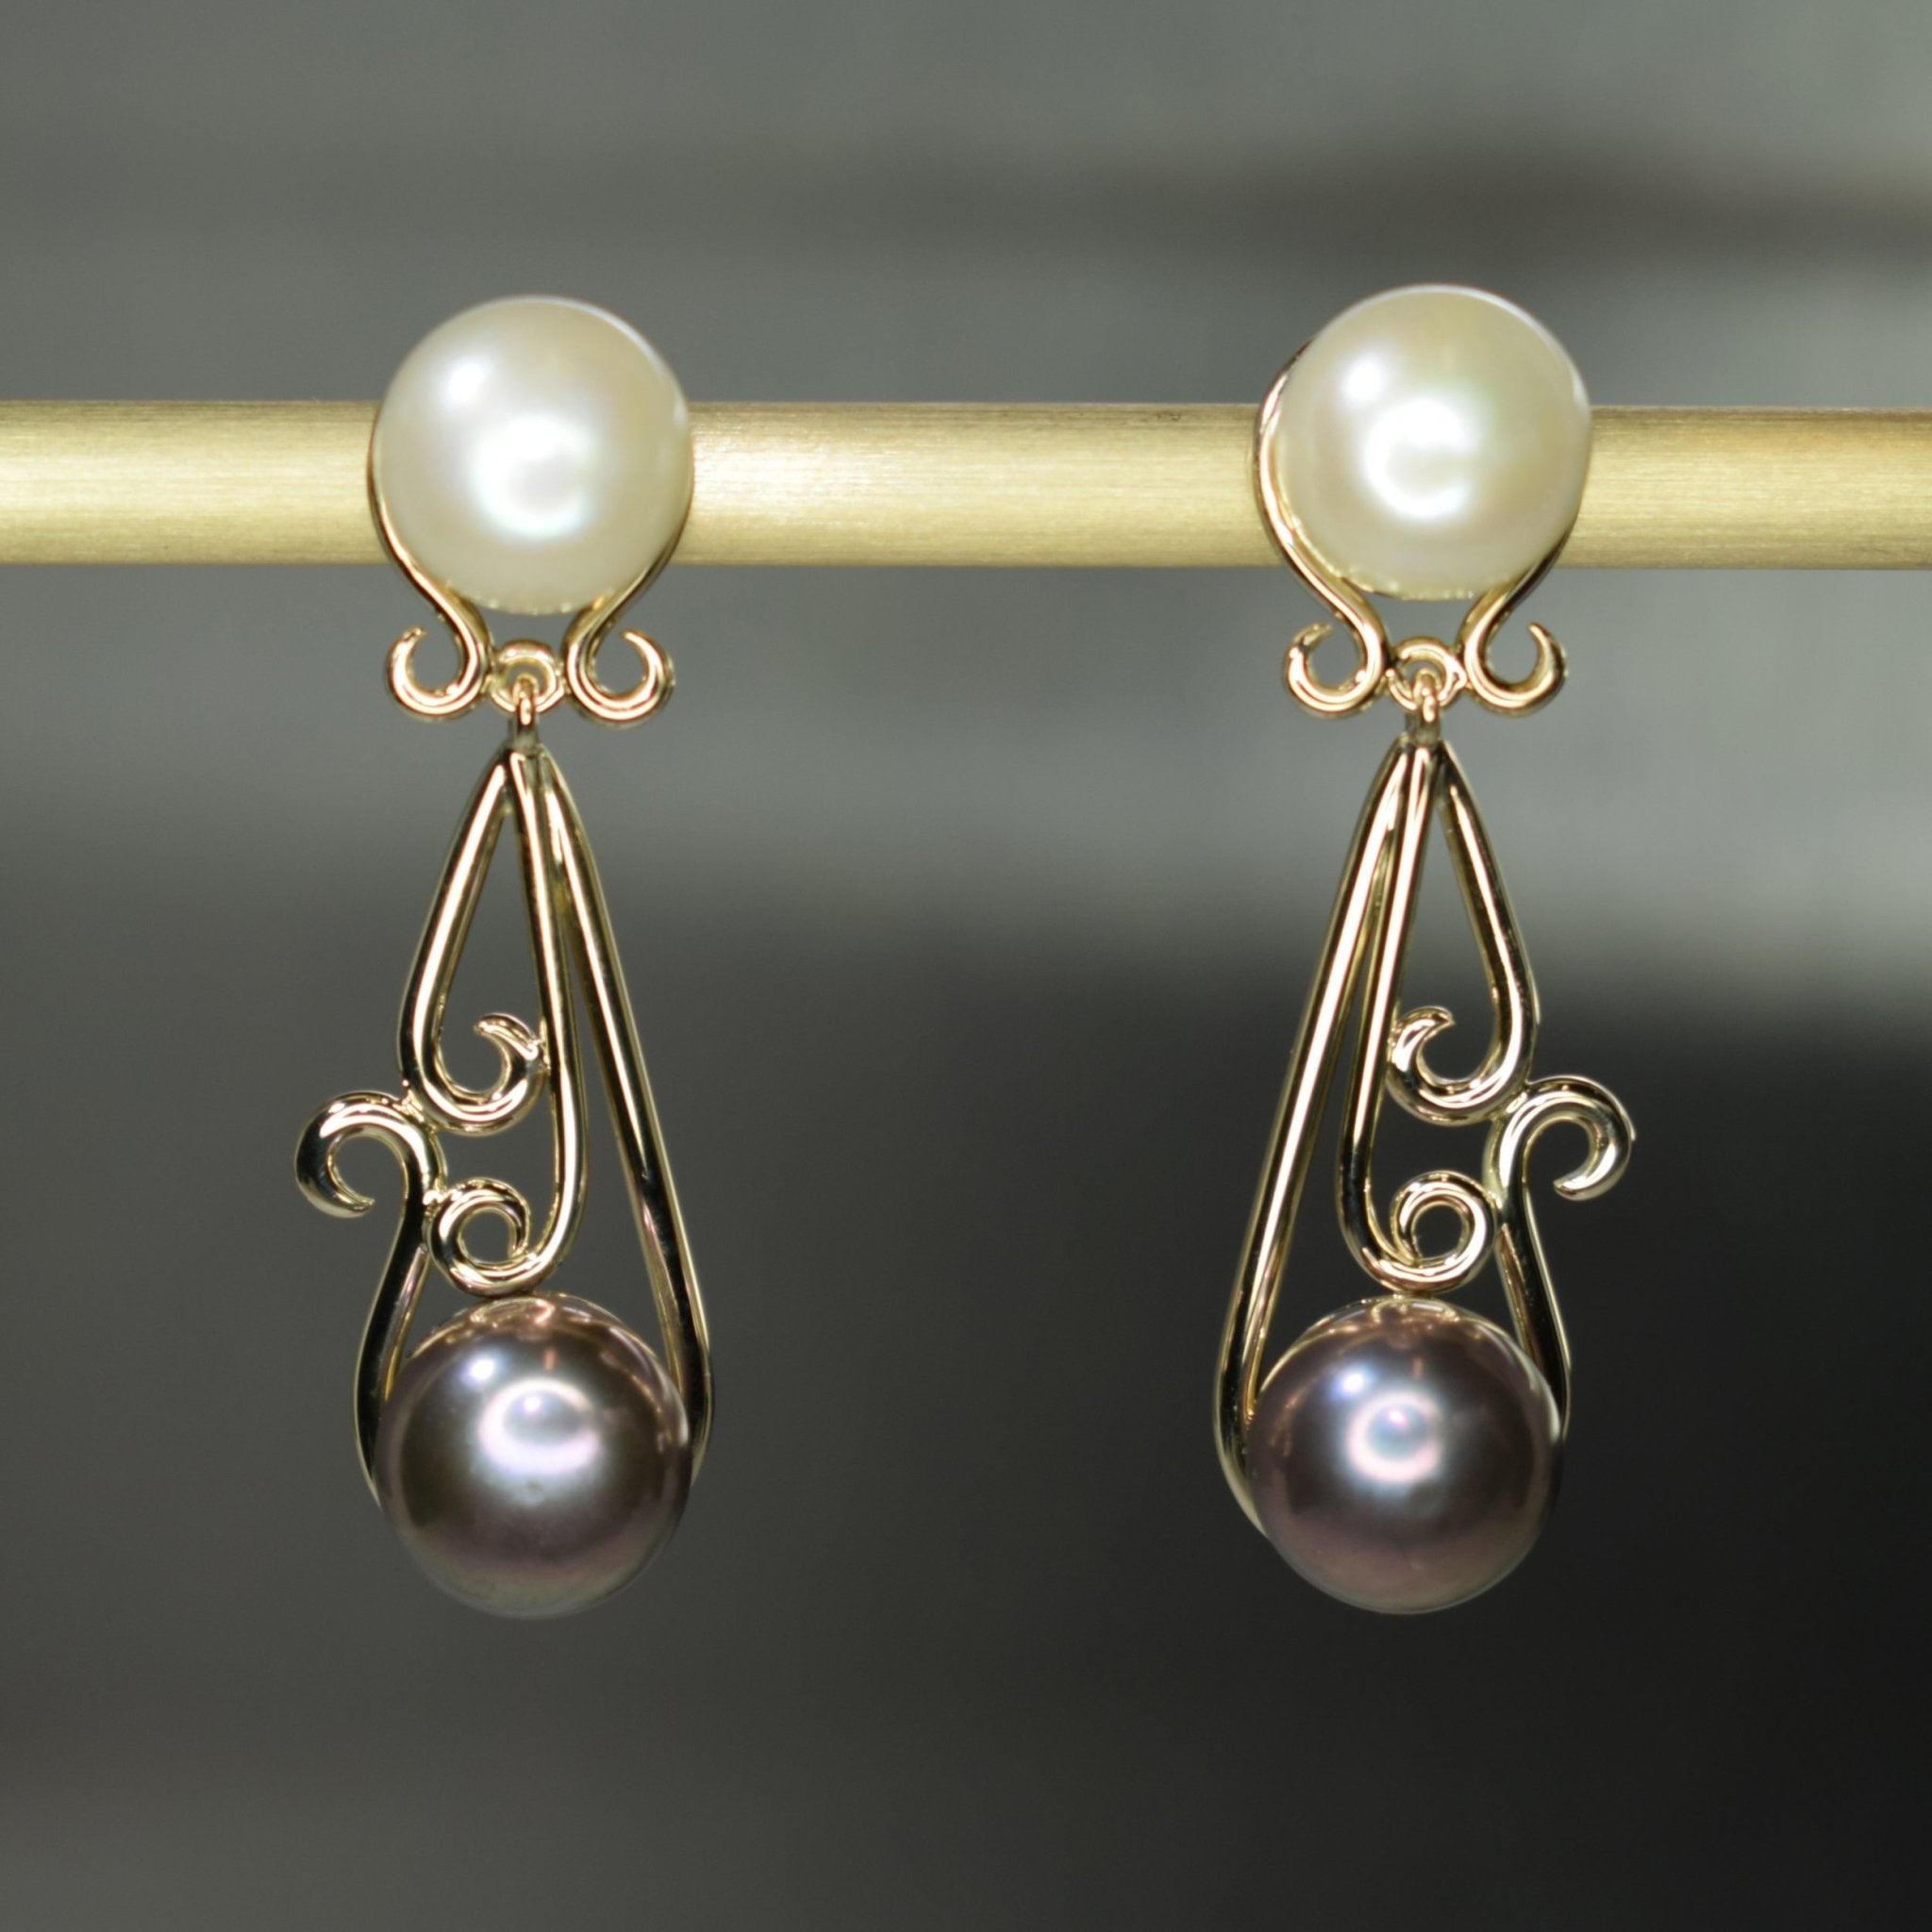 9ct yellow gold and pearl filigree earrings - Scherman's - Earrings - Scherman's